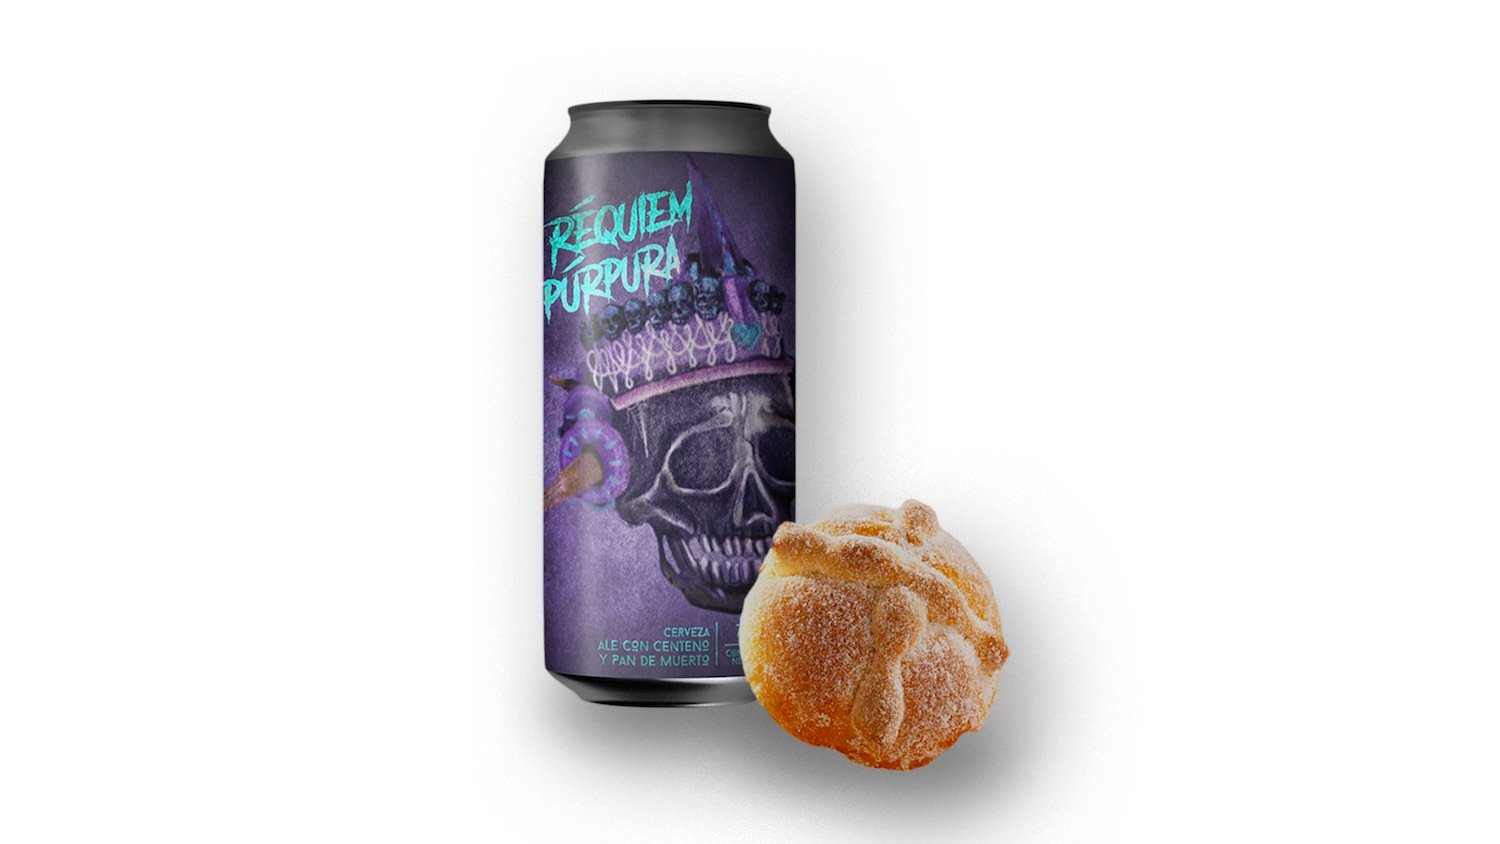 Réquiem púrpura: La cerveza hecha con pan de muerto